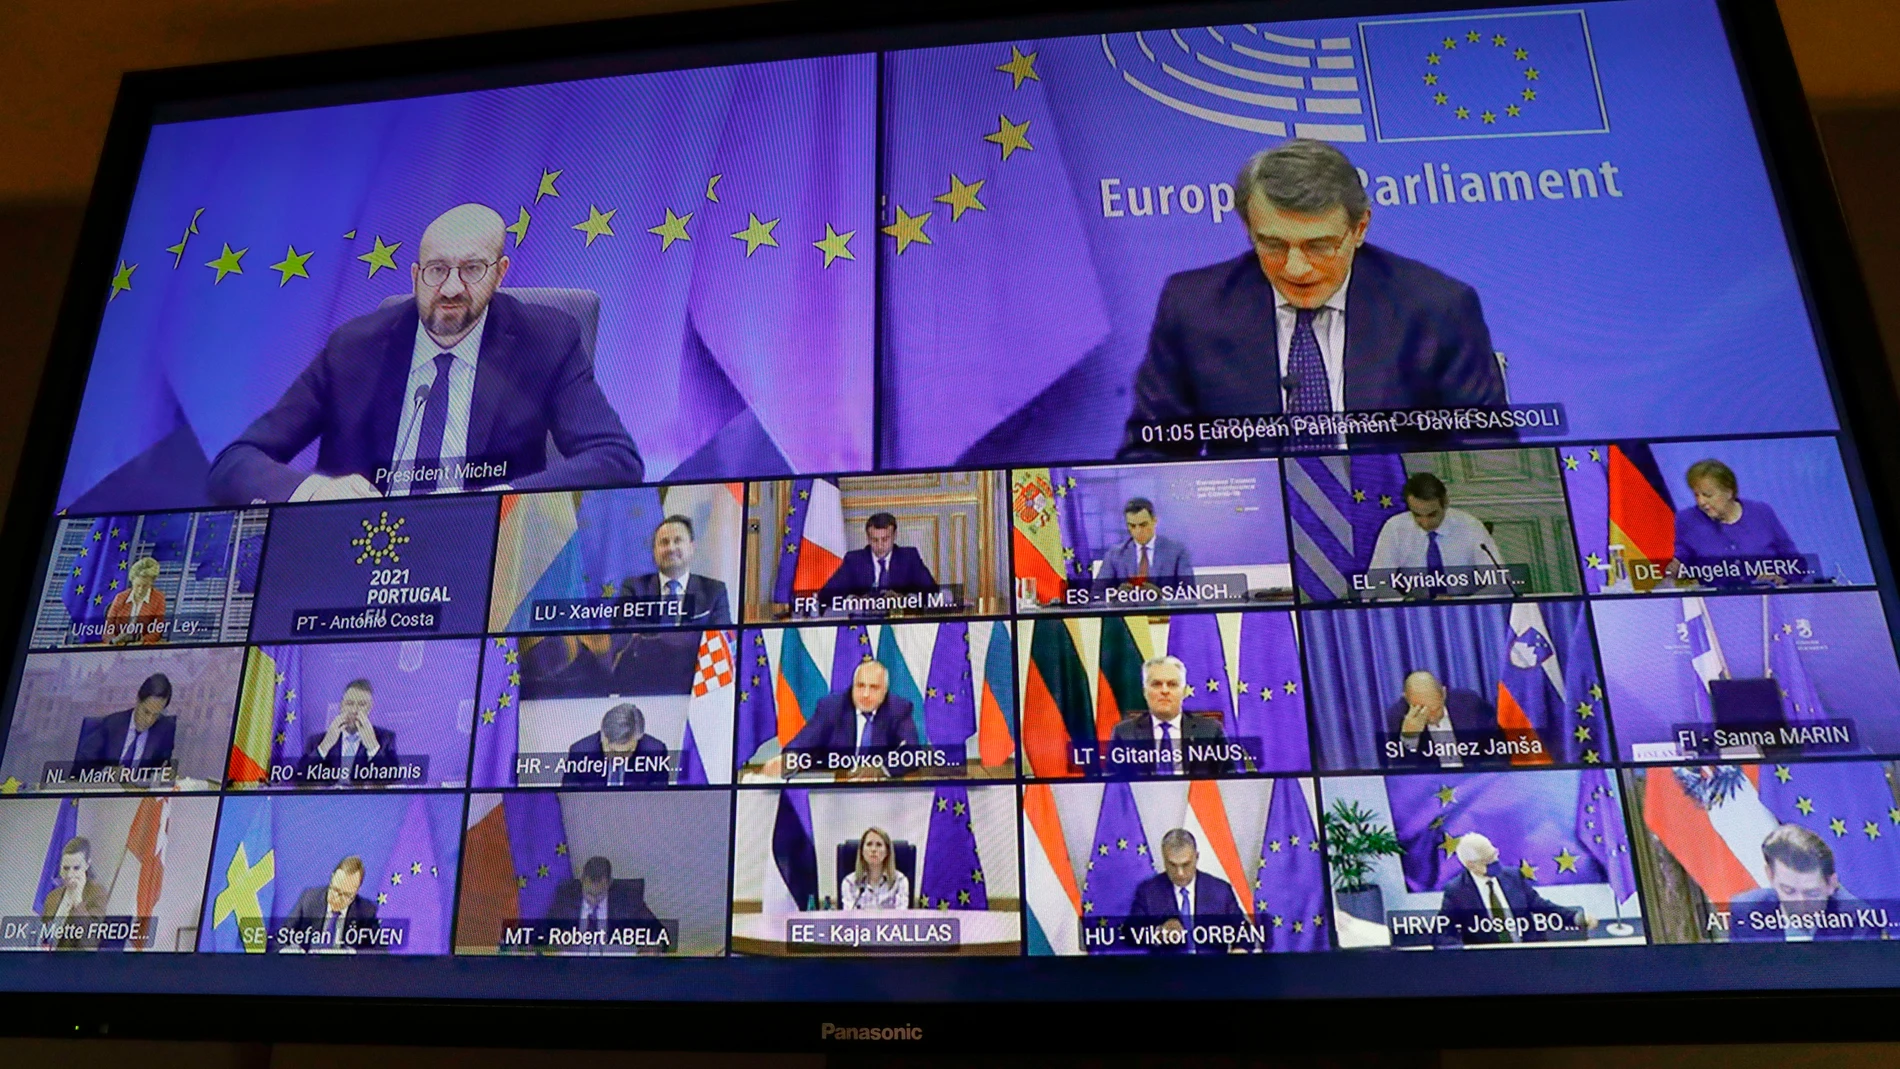 Imagen de los líderes del Parlamento Europeo durante una reunión